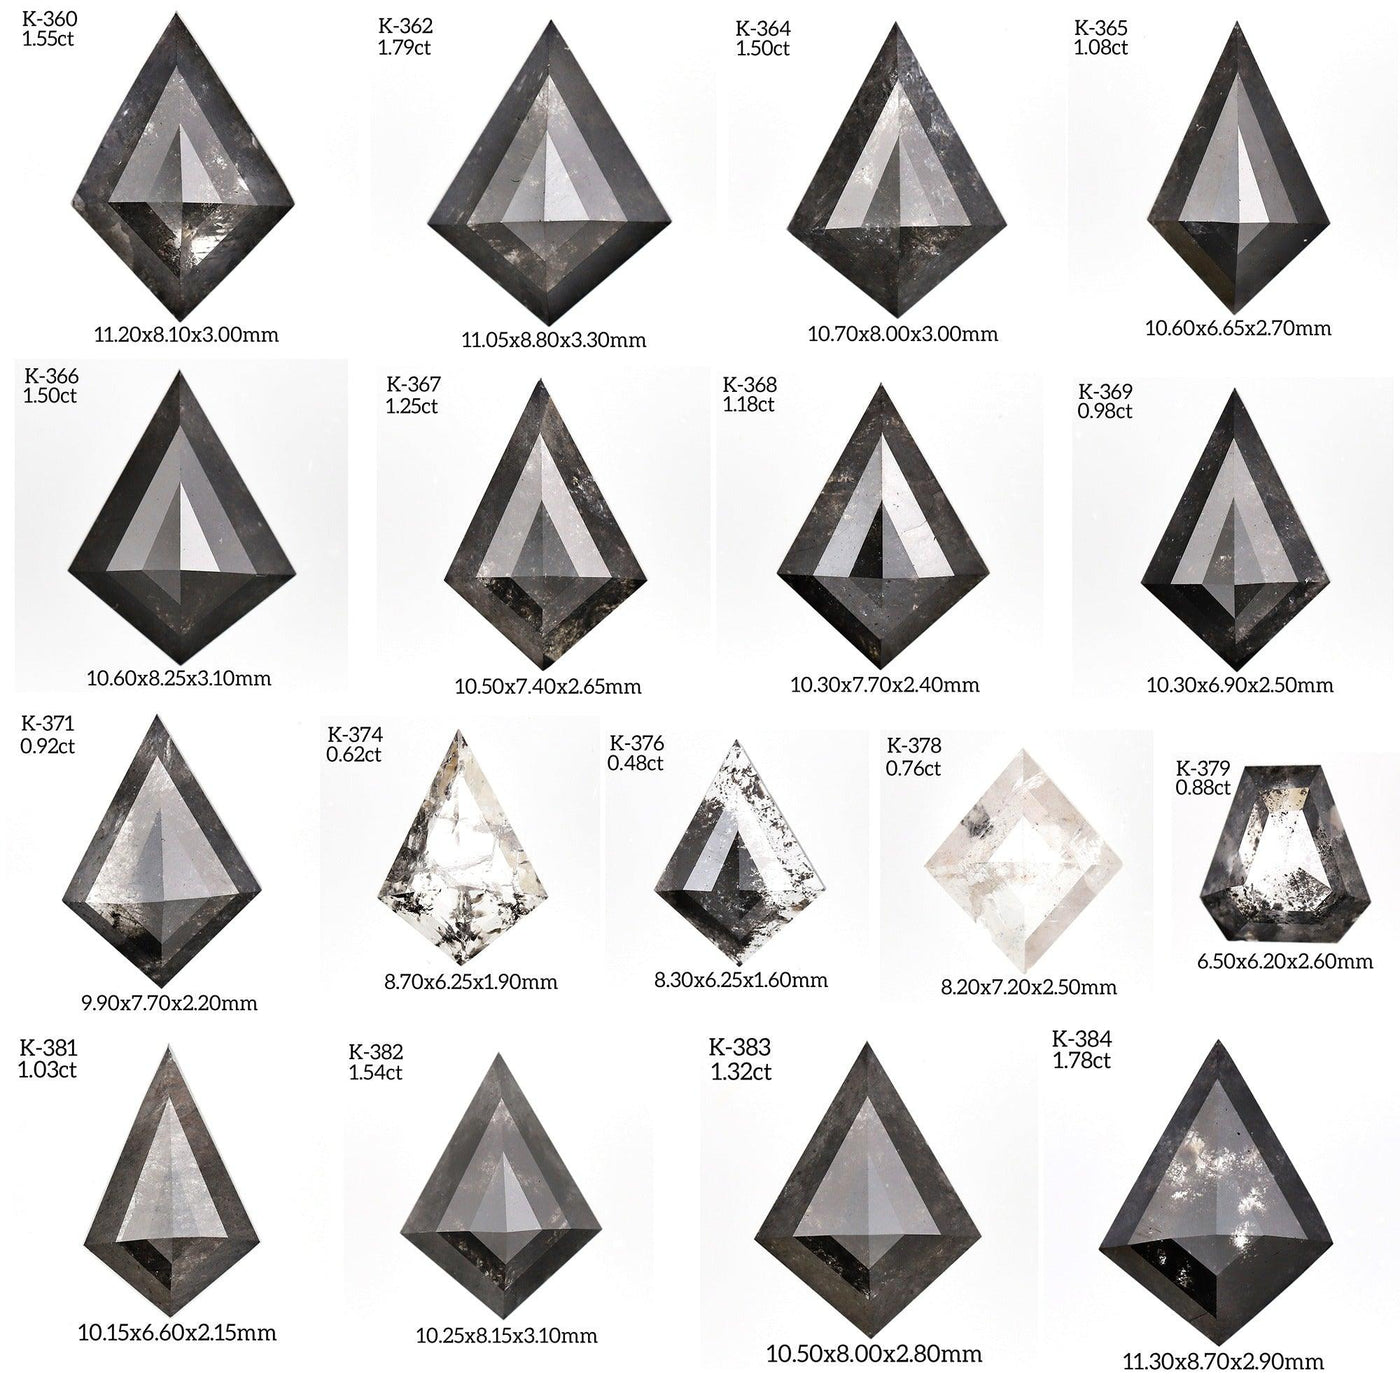 K391 - Salt and pepper kite diamond